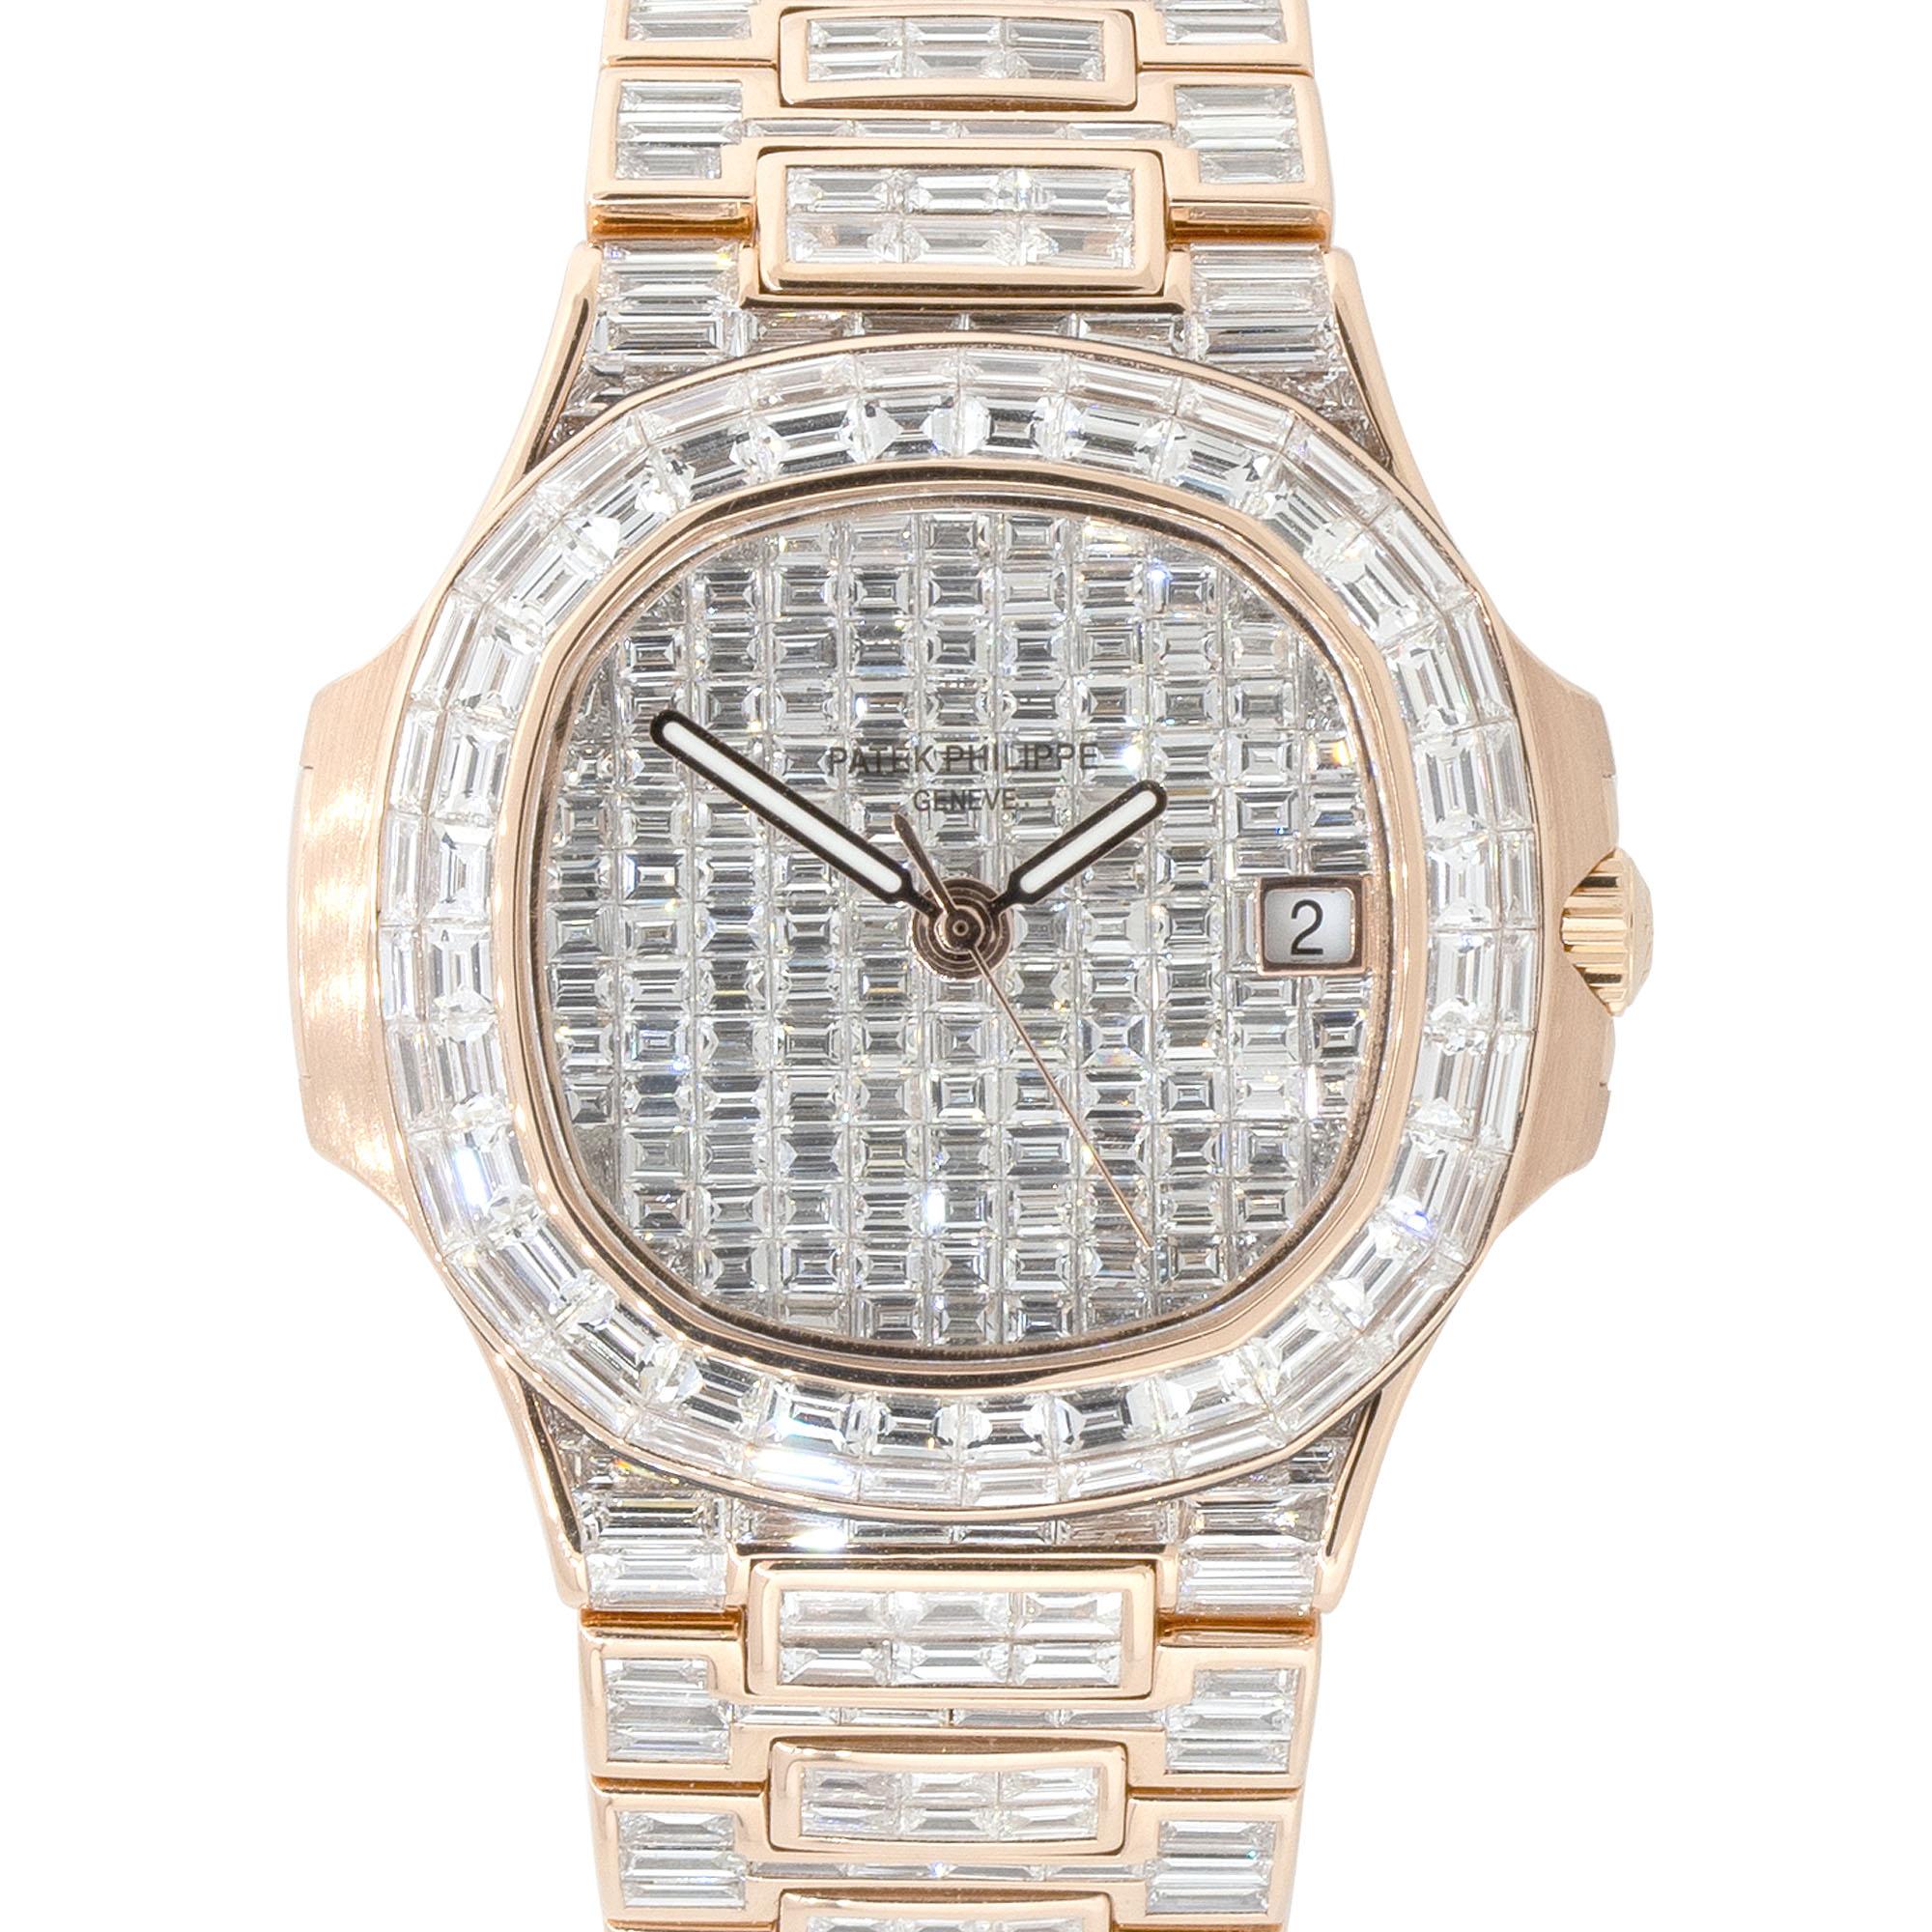 Marke: Patek Philippe
Die Patek Philippe Nautilus 18k Rose Gold All Baguette Diamond Watch ist ein Symbol für ultimativen Luxus, das sowohl das uhrmacherische Know-how der Marke als auch ihre meisterhafte Schmuckkunst unter Beweis stellt. Ein